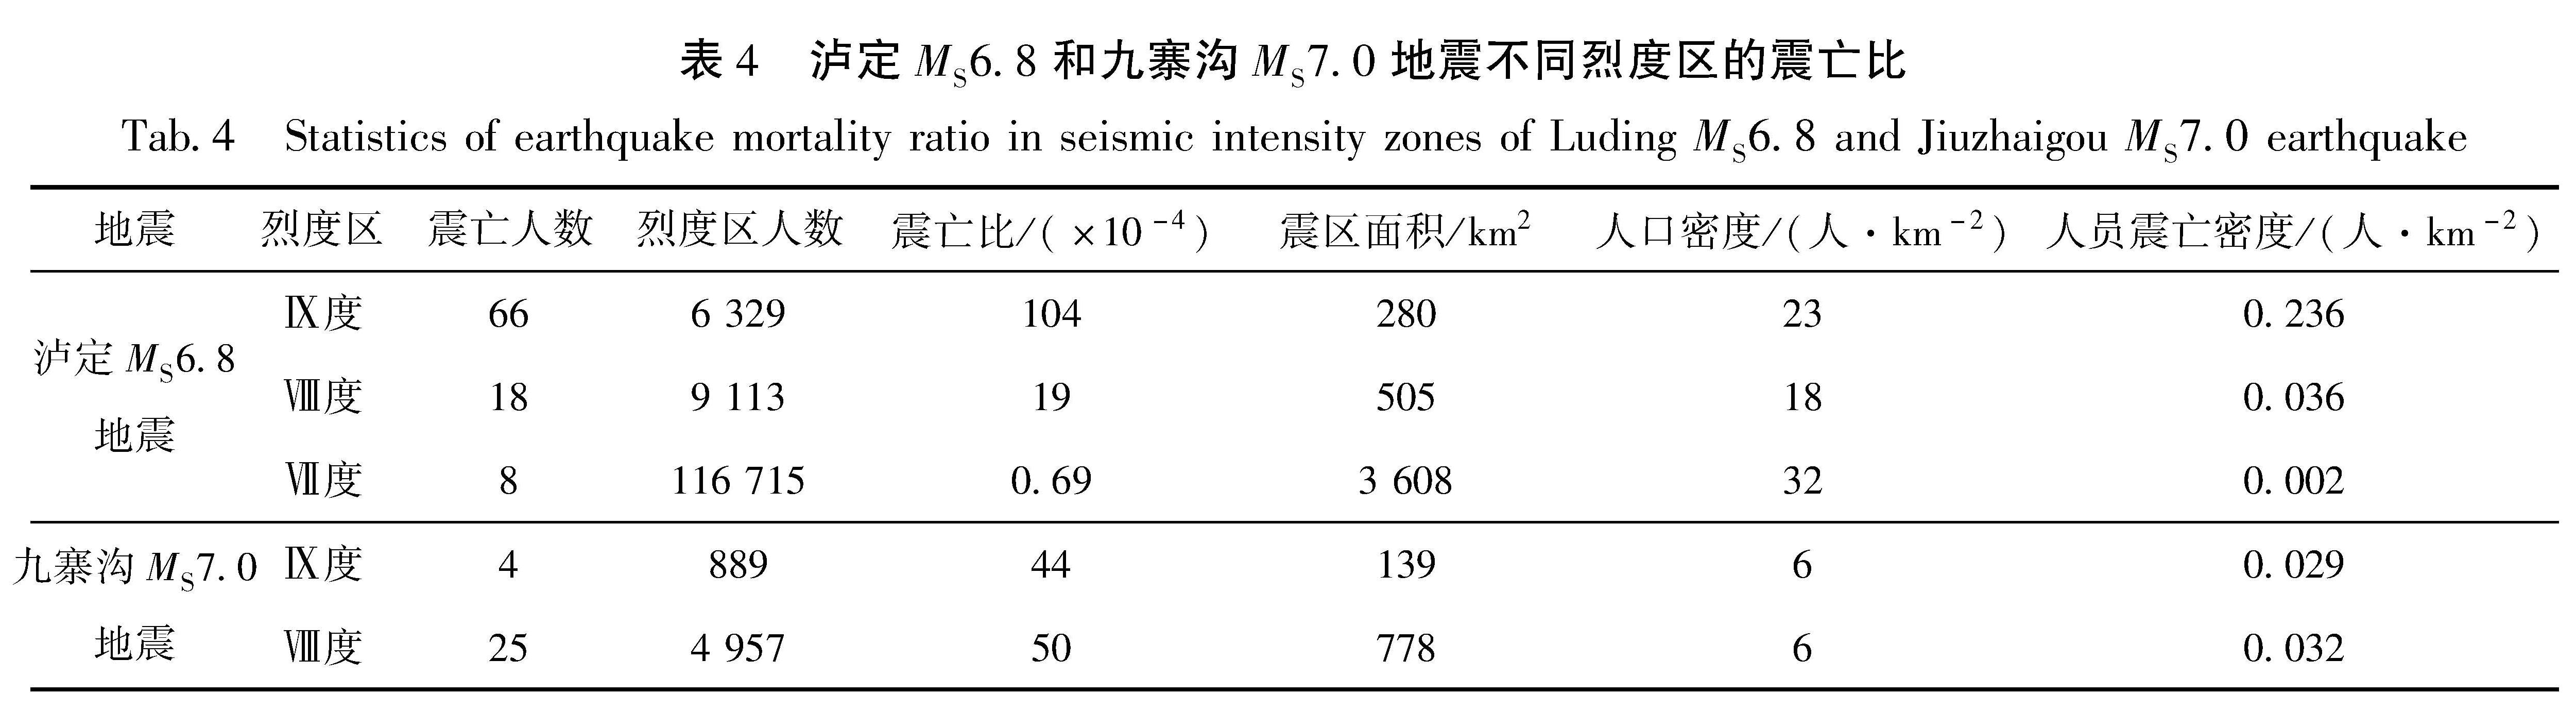 表4 泸定MS6.8和九寨沟MS7.0地震不同烈度区的震亡比<br/>Tab.4 Statistics of earthquake mortality ratio in seismic intensity zones of Luding MS6.8 and Jiuzhaigou MS7.0 earthquake